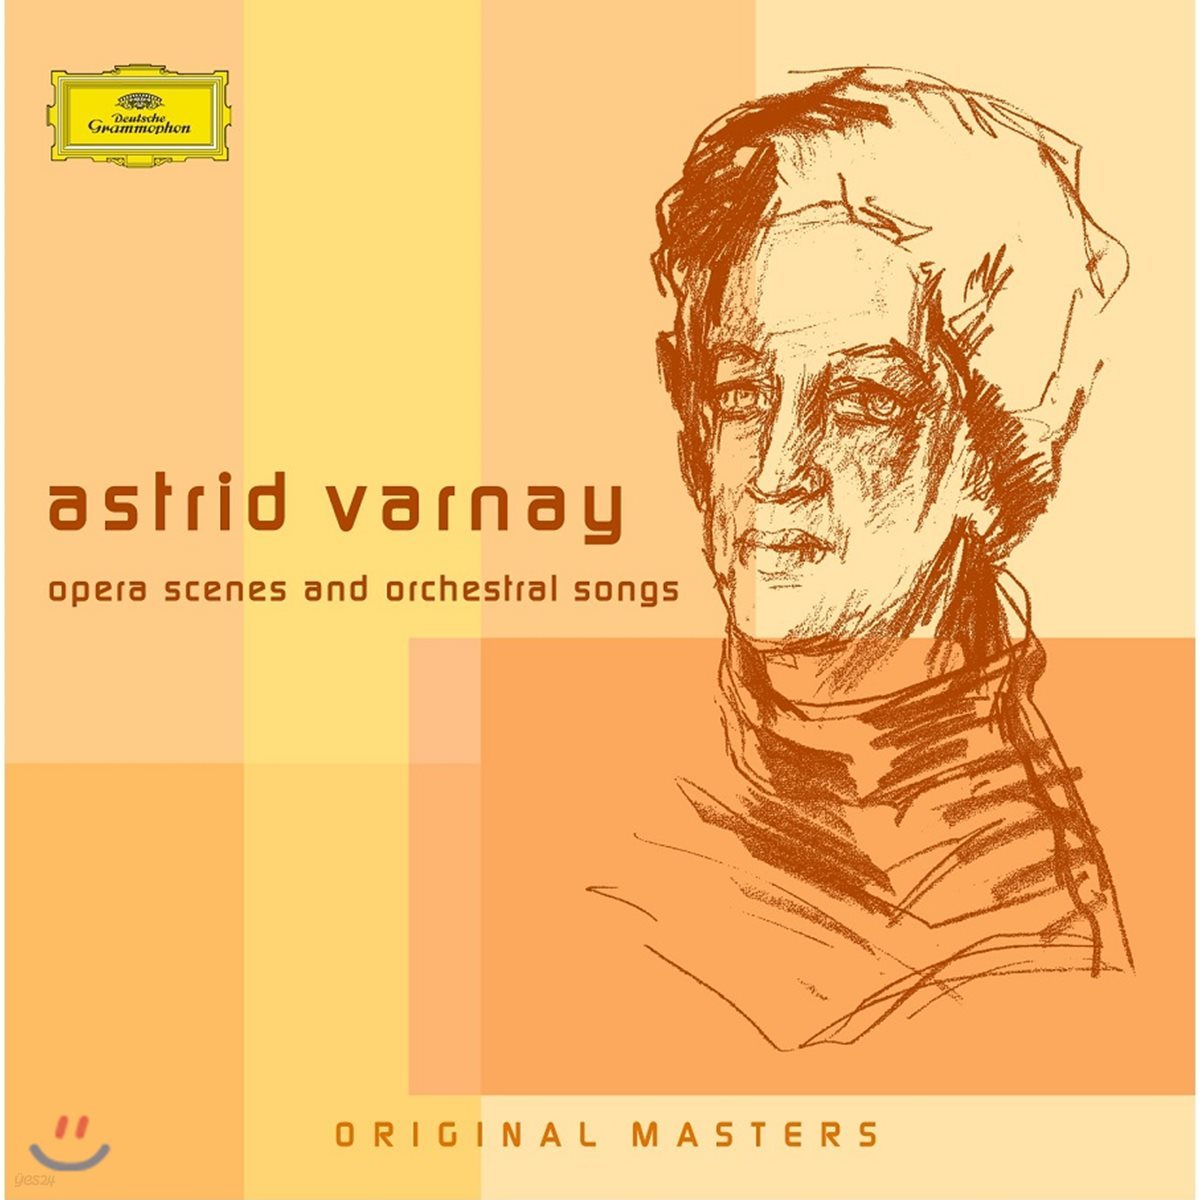 아스트리드 바르나이 - 오페라 아리아, 관현악 가곡집 (Astrid Varnay - Opera Scenes And Orchestral Songs)